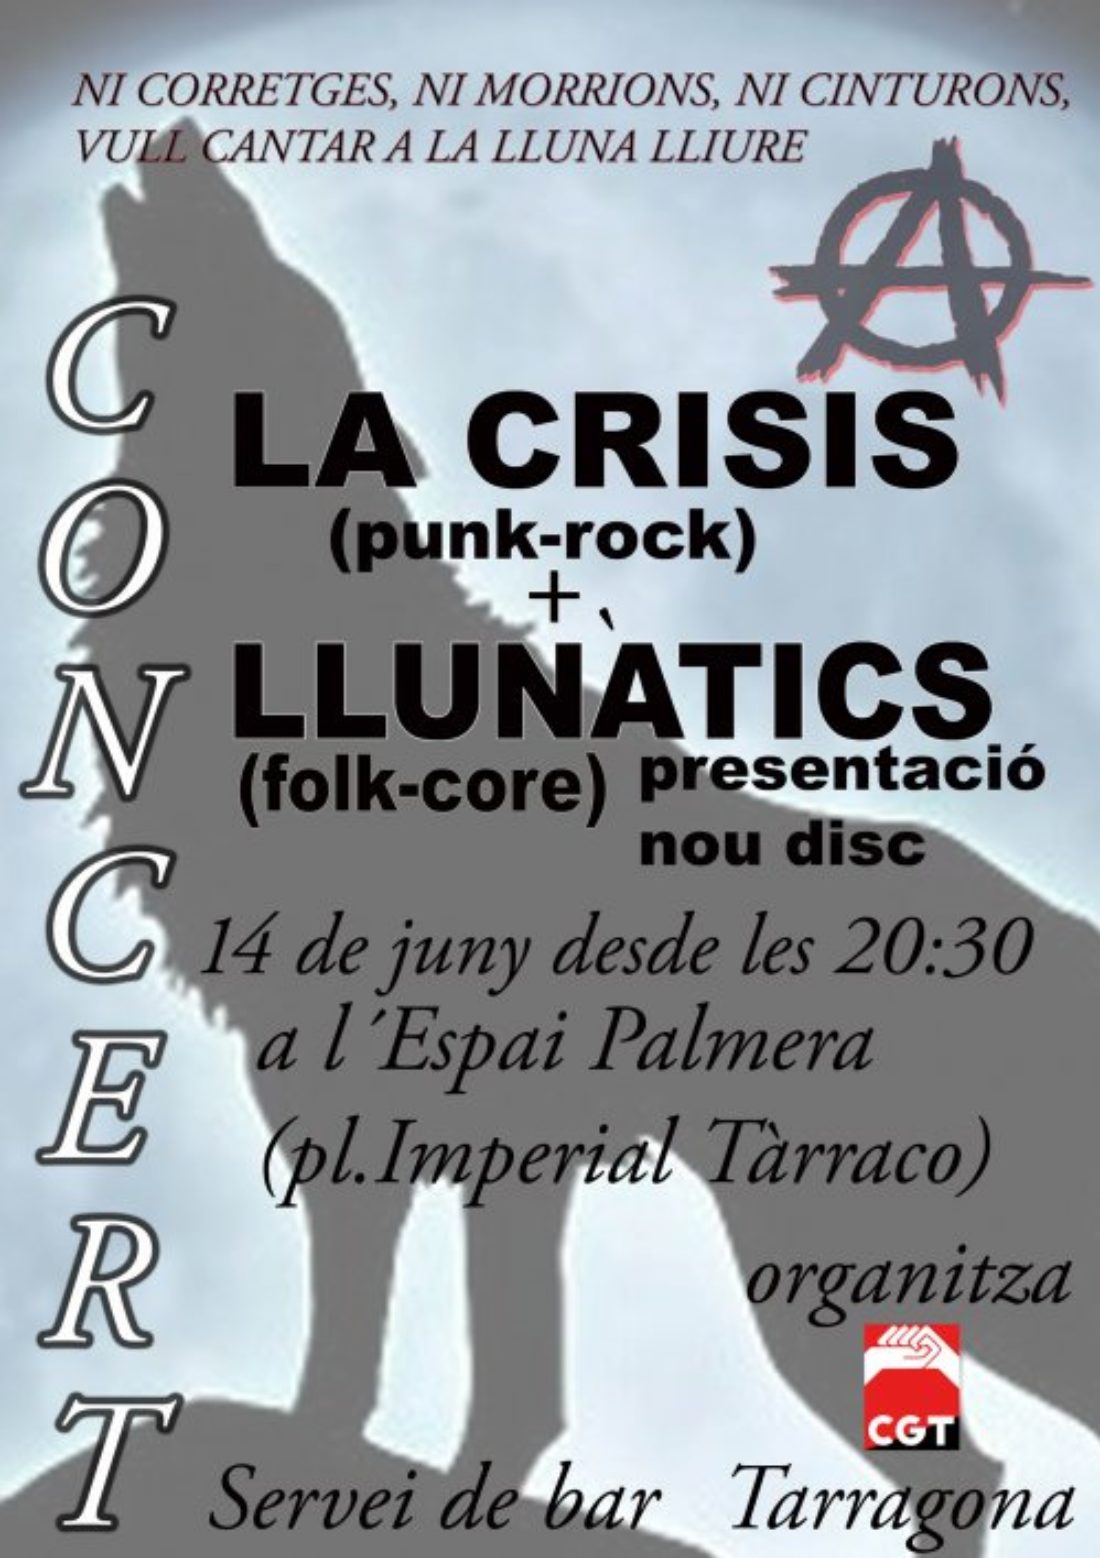 La CGT de Tarragona organiza un concierto el 14 de junio